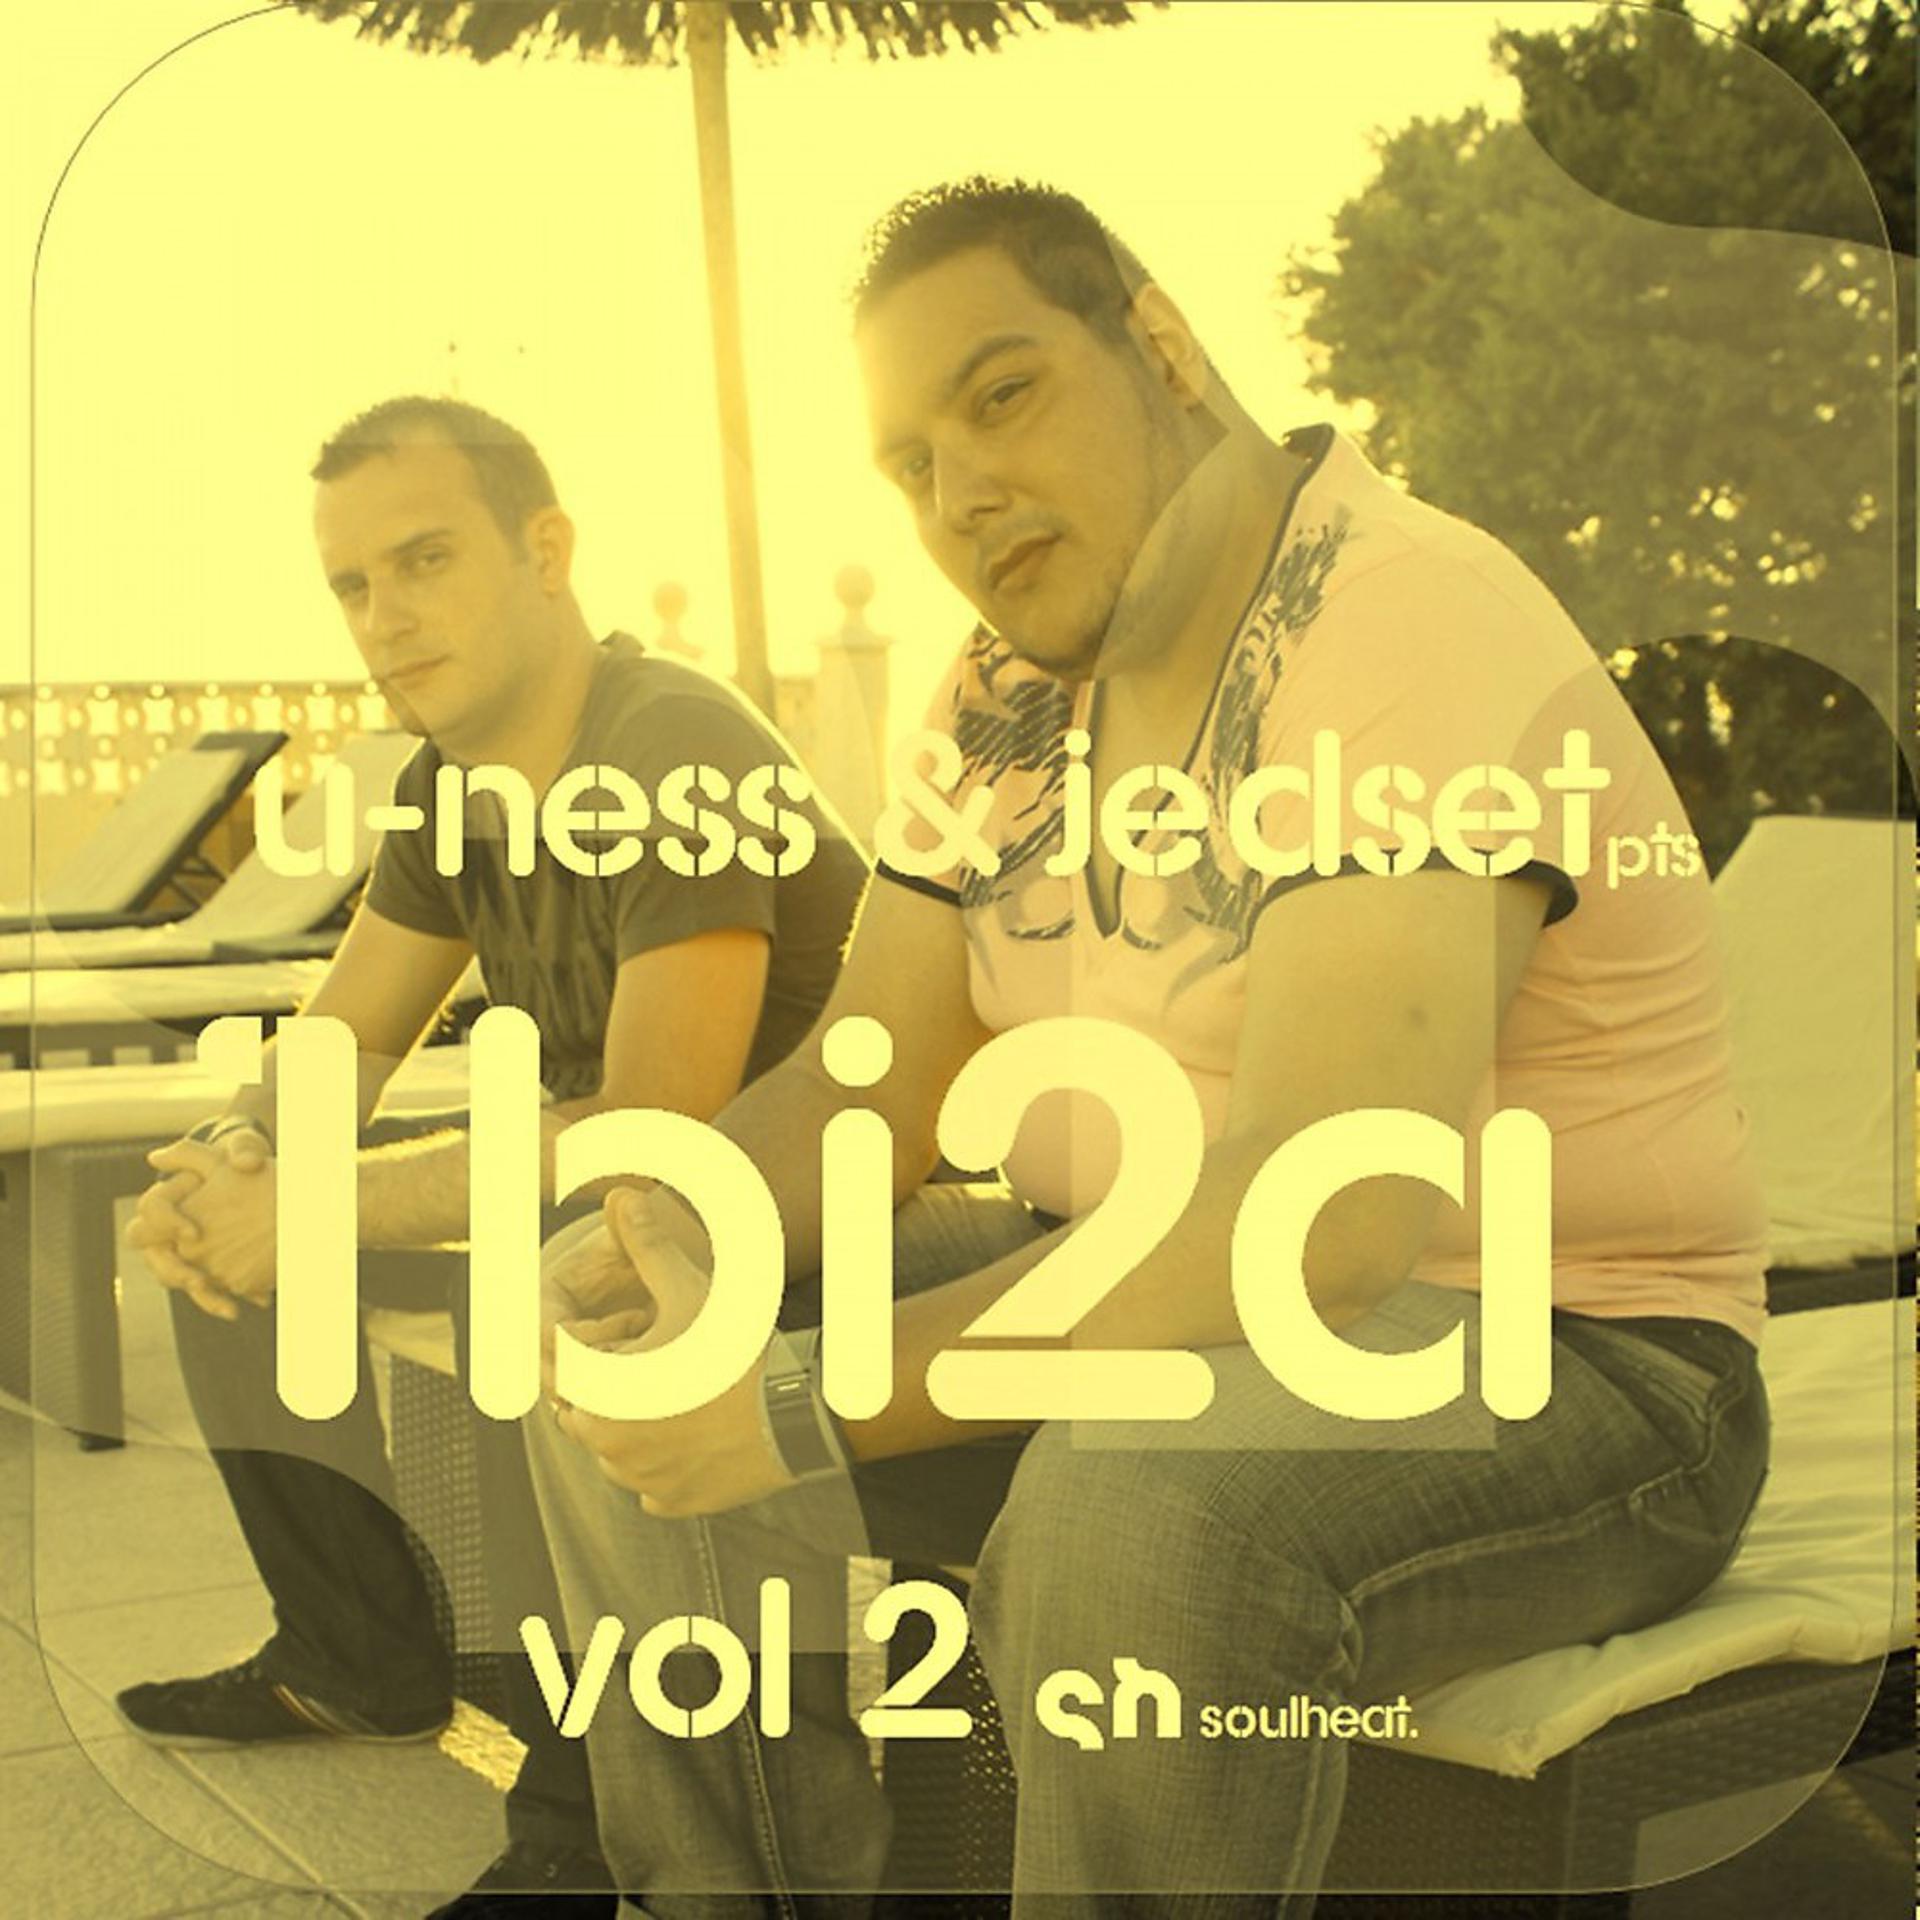 Постер альбома U-Ness & Jedset Pts Ibiza 12 (Vol. 2)